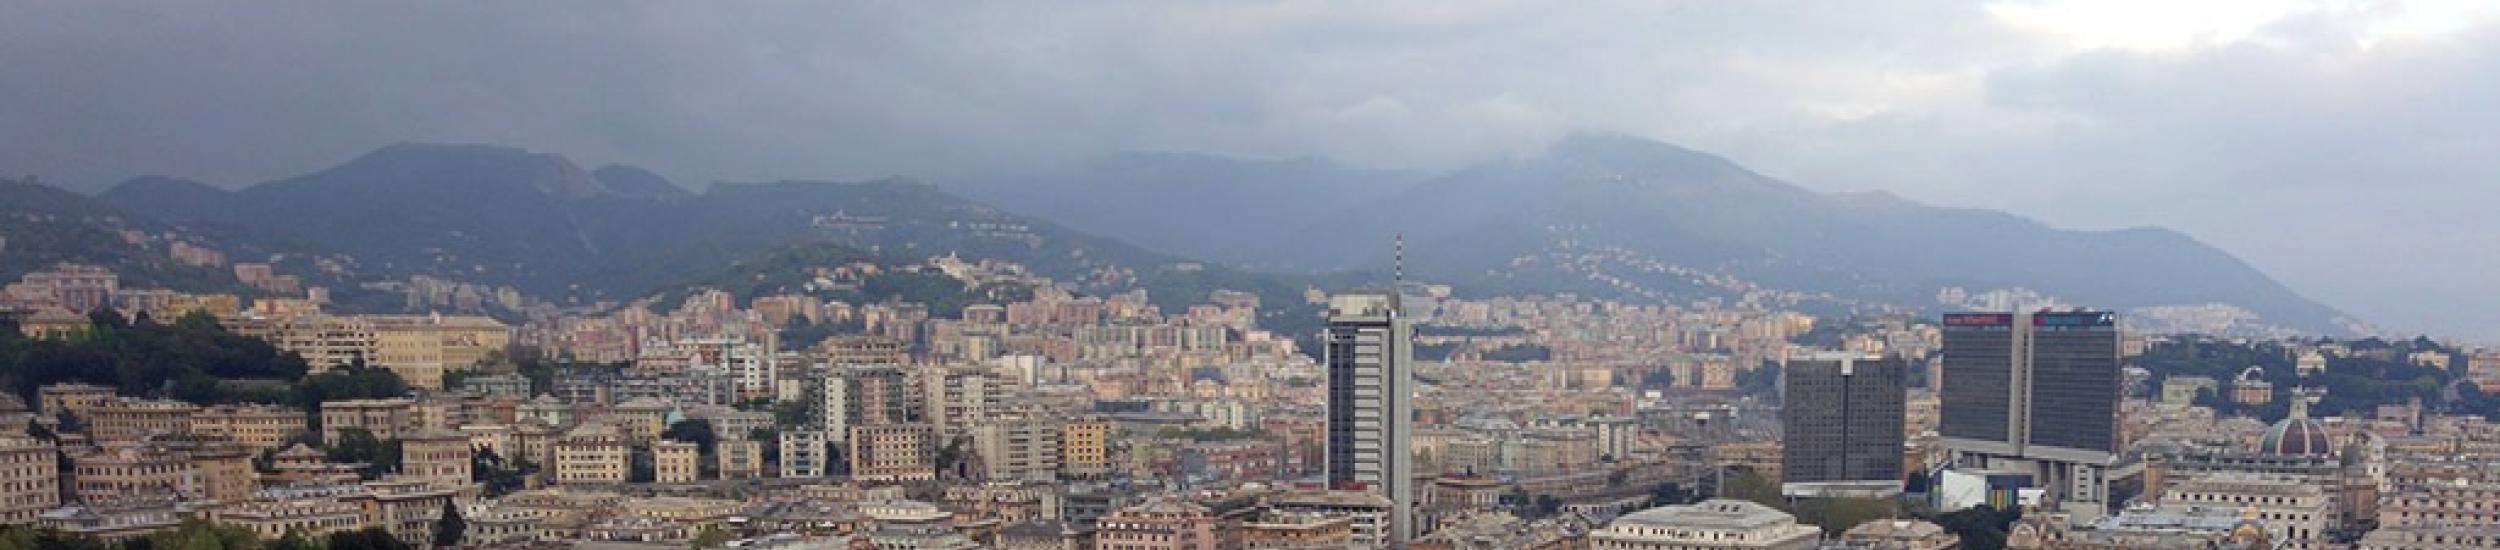 Aria, inquinamento nei limiti ieri nella città metropolitana di genova (news del 2016-10-13 09:42:56)